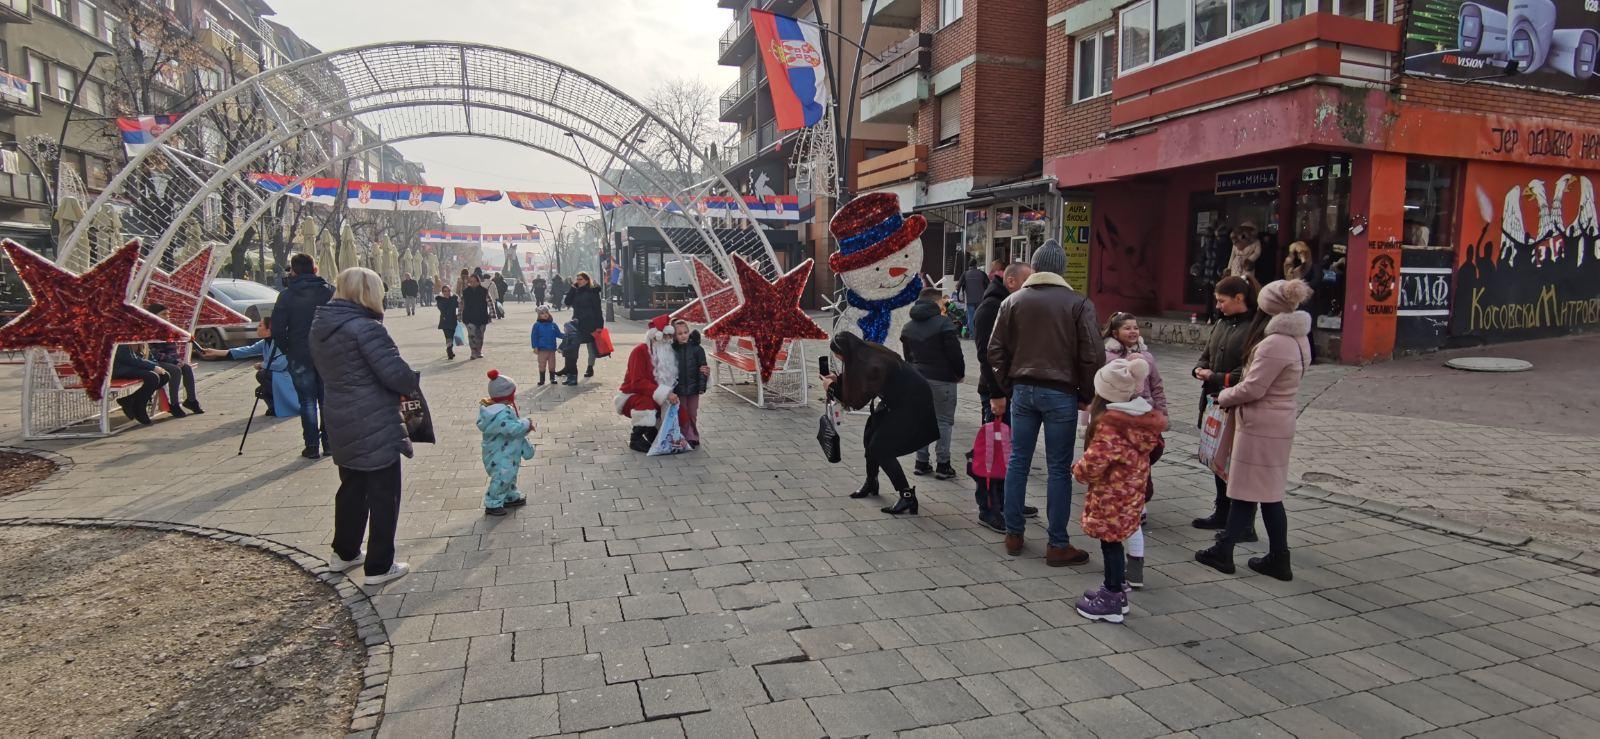 Televizija “Dankos” donirala poklon paketiće za mališane u Kosovskoj Mitrovici